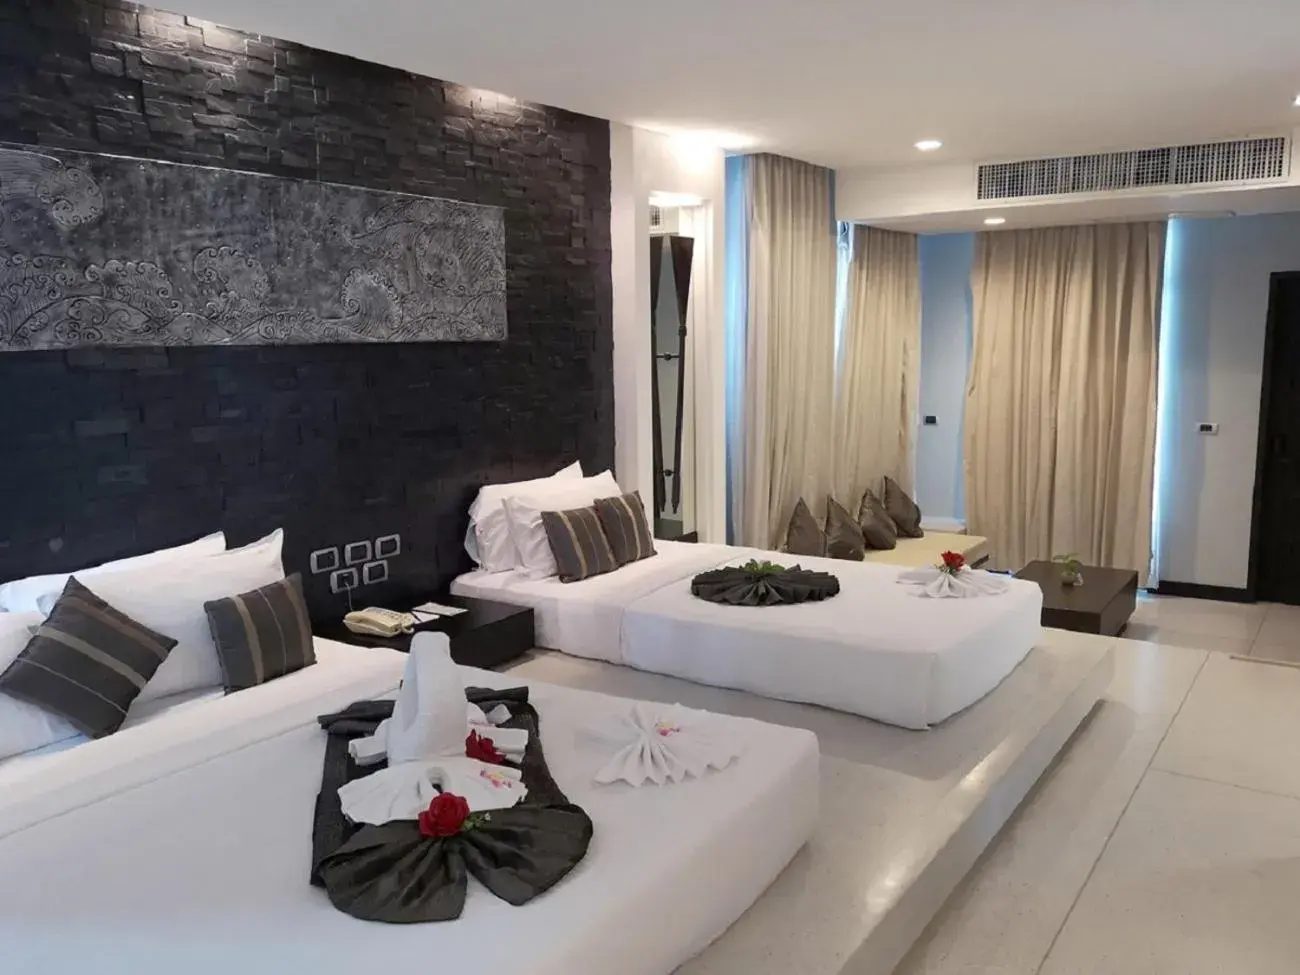 Bedroom in The Zign Hotel Premium Villa